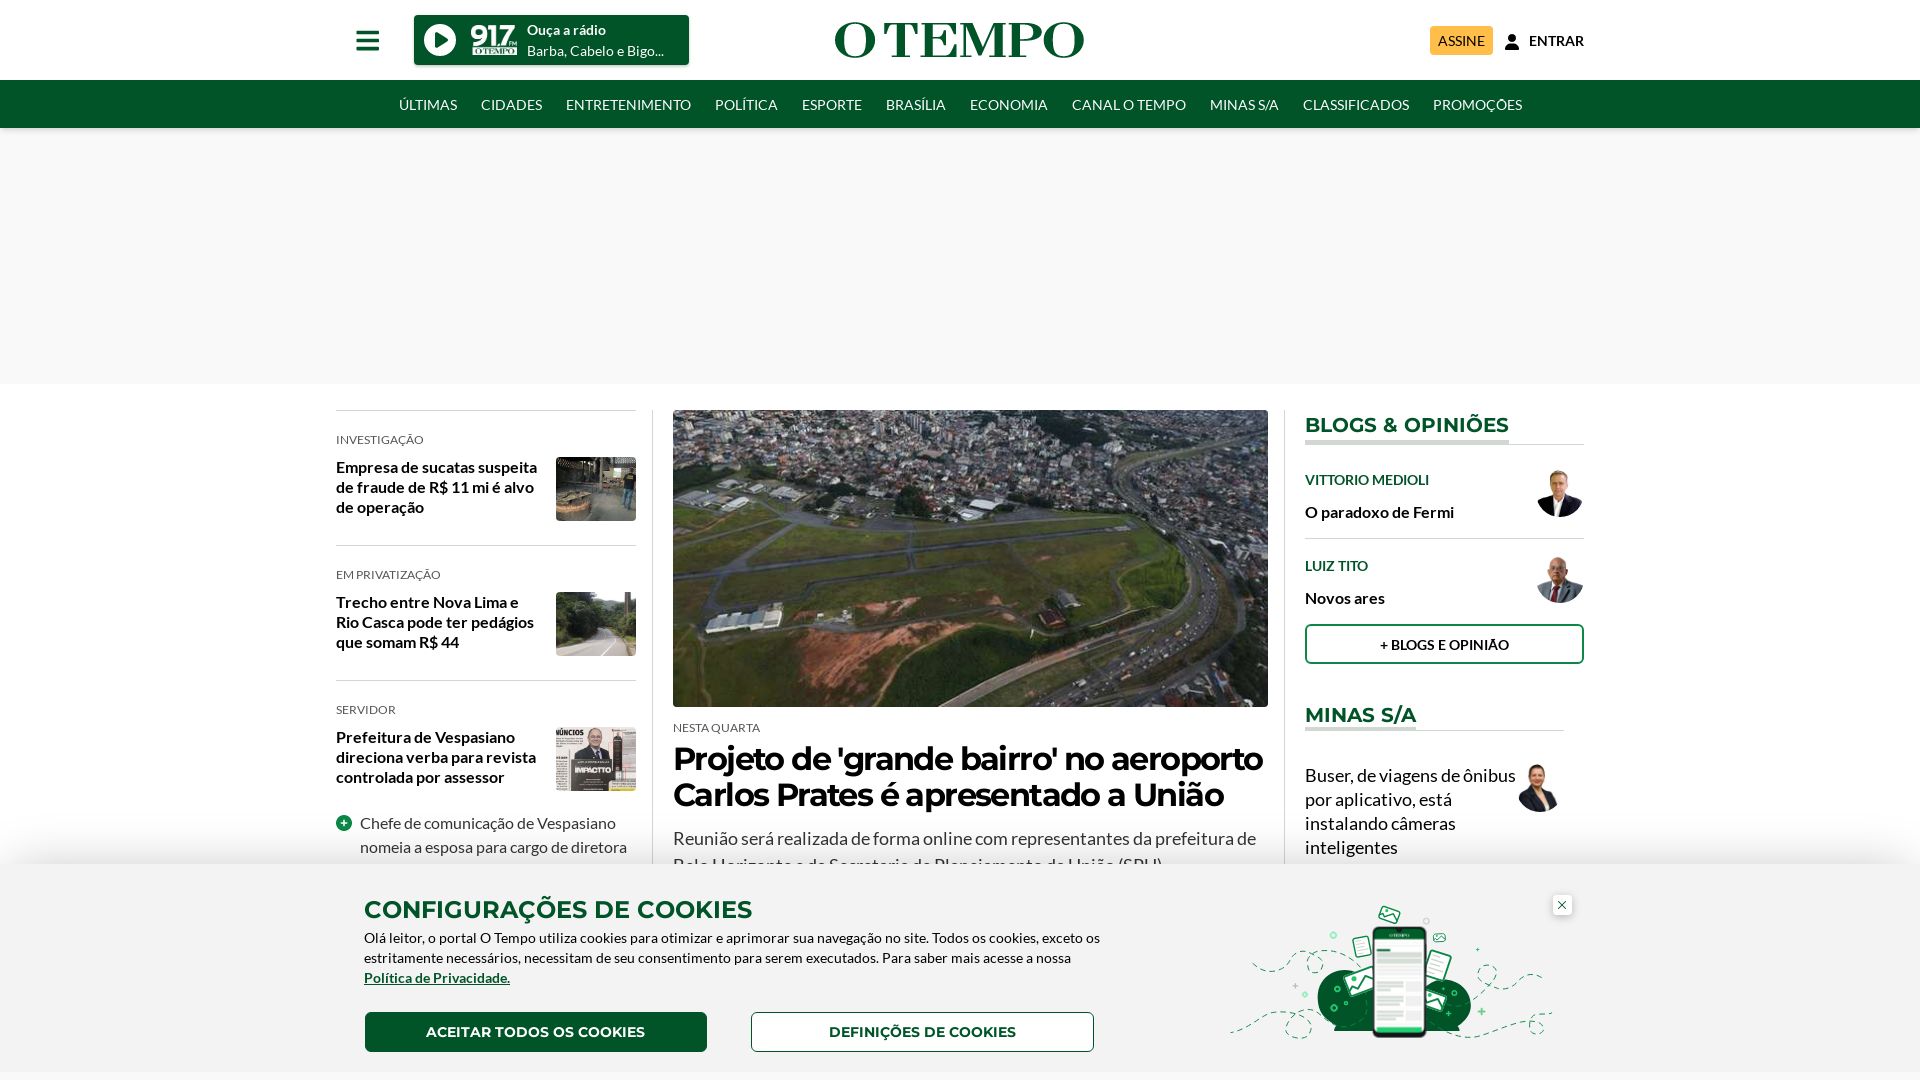 État du site web otempo.com.br est   EN LIGNE